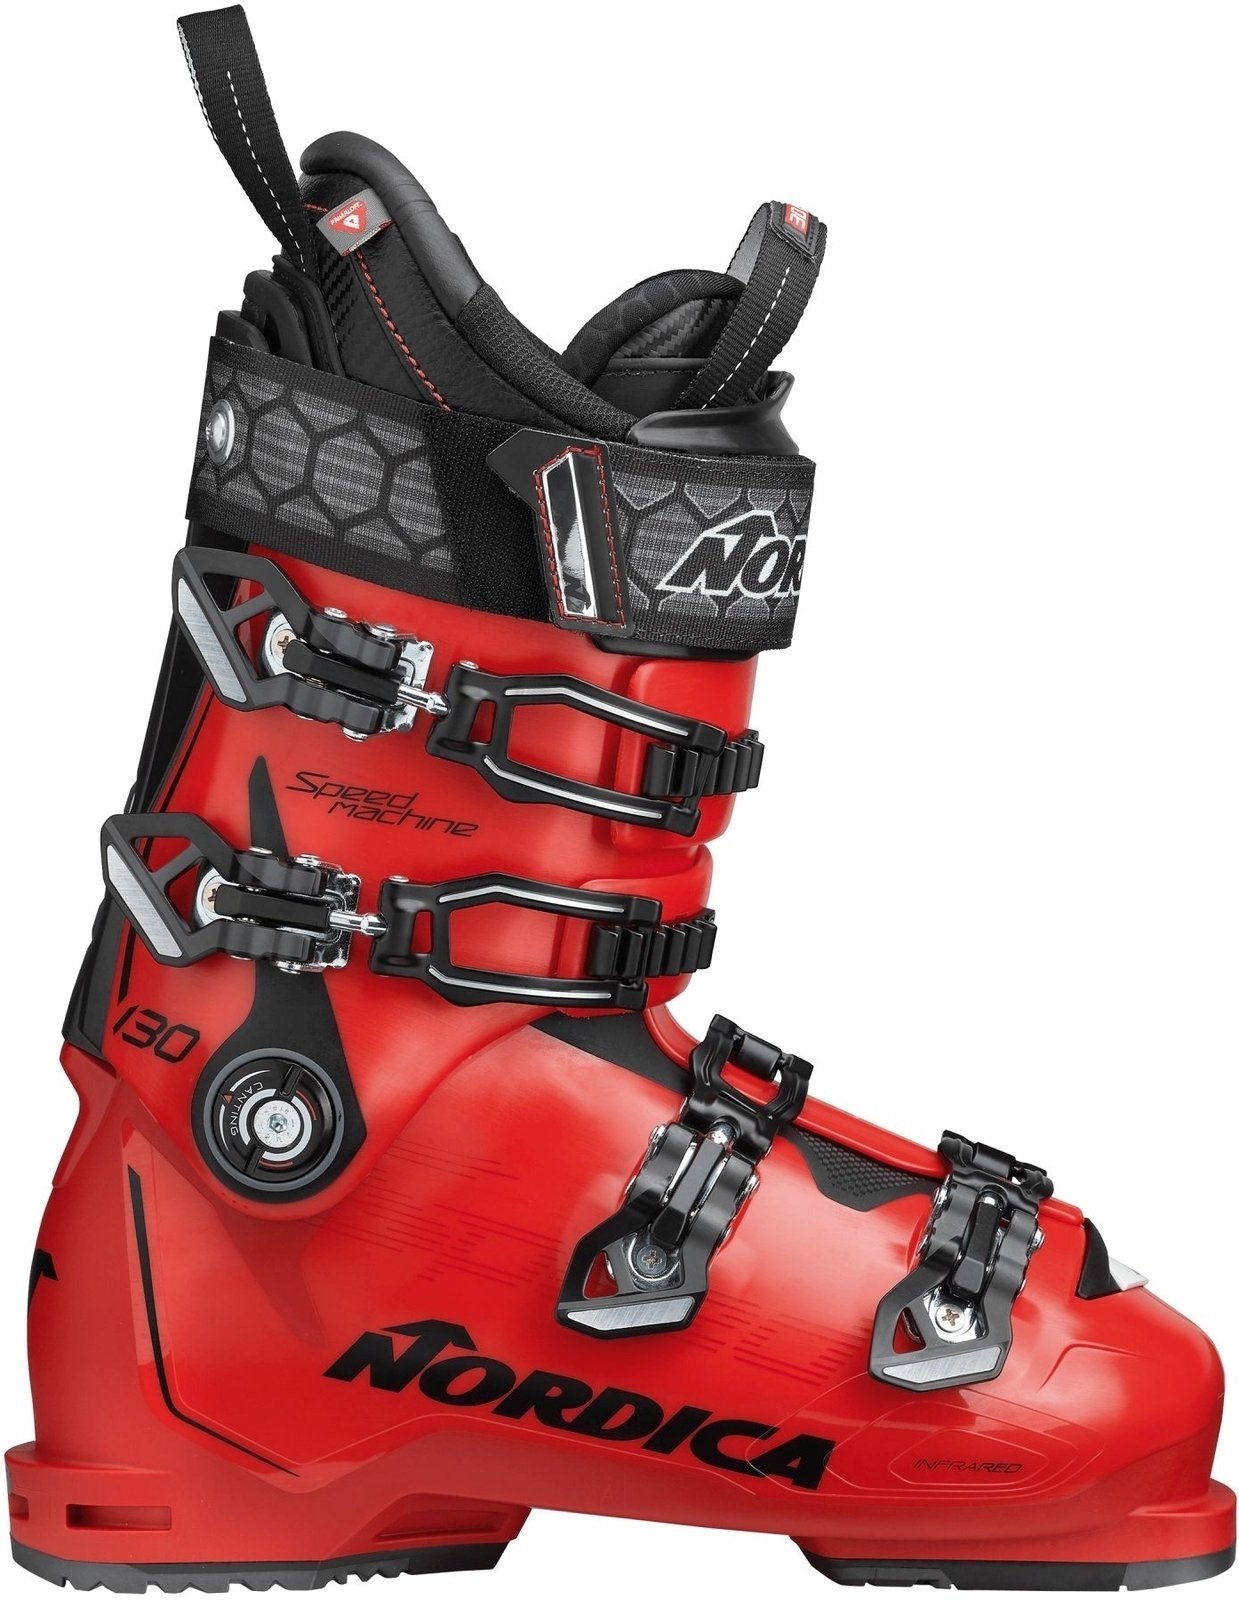 Alpin-Skischuhe Nordica Speedmachine Rot-Schwarz 290 Alpin-Skischuhe